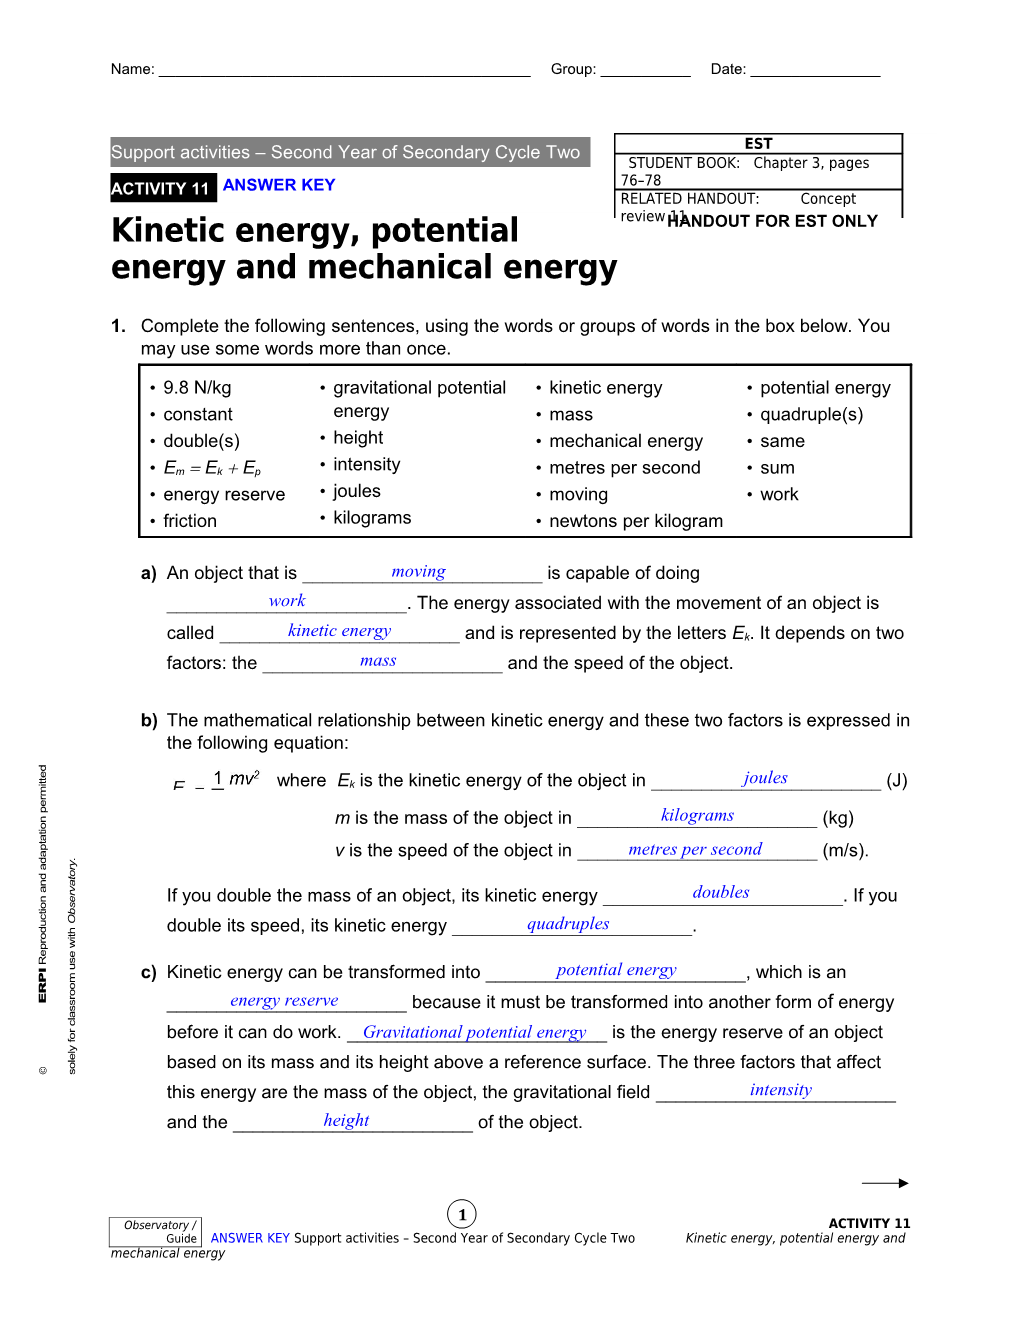 Kinetic Energy, Potential Energy and Mechanical Energy